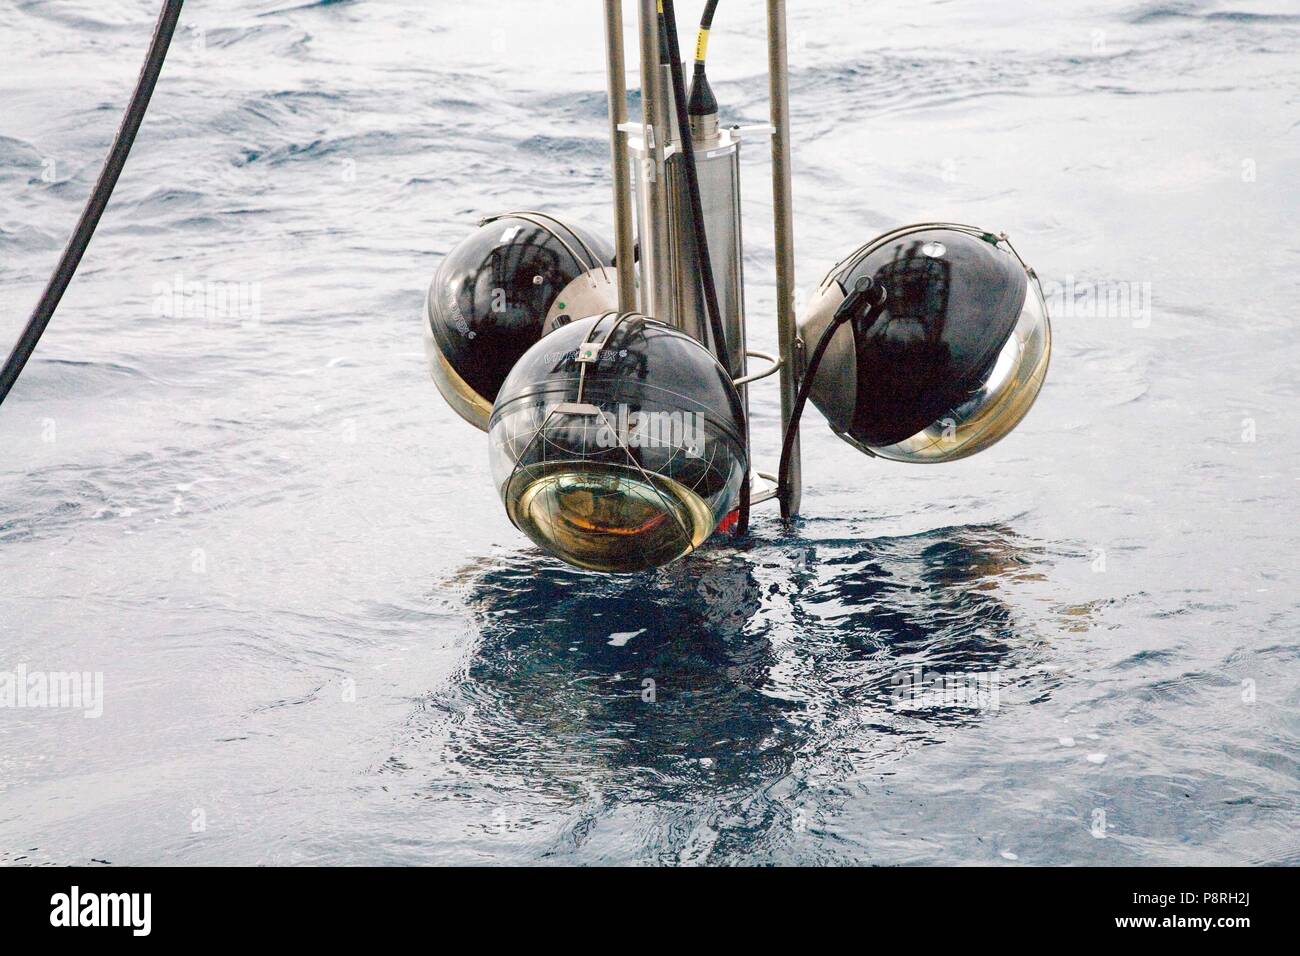 Distribuzione di Antares deep sea fotocamera;s sul Mediterraneo Foto Stock